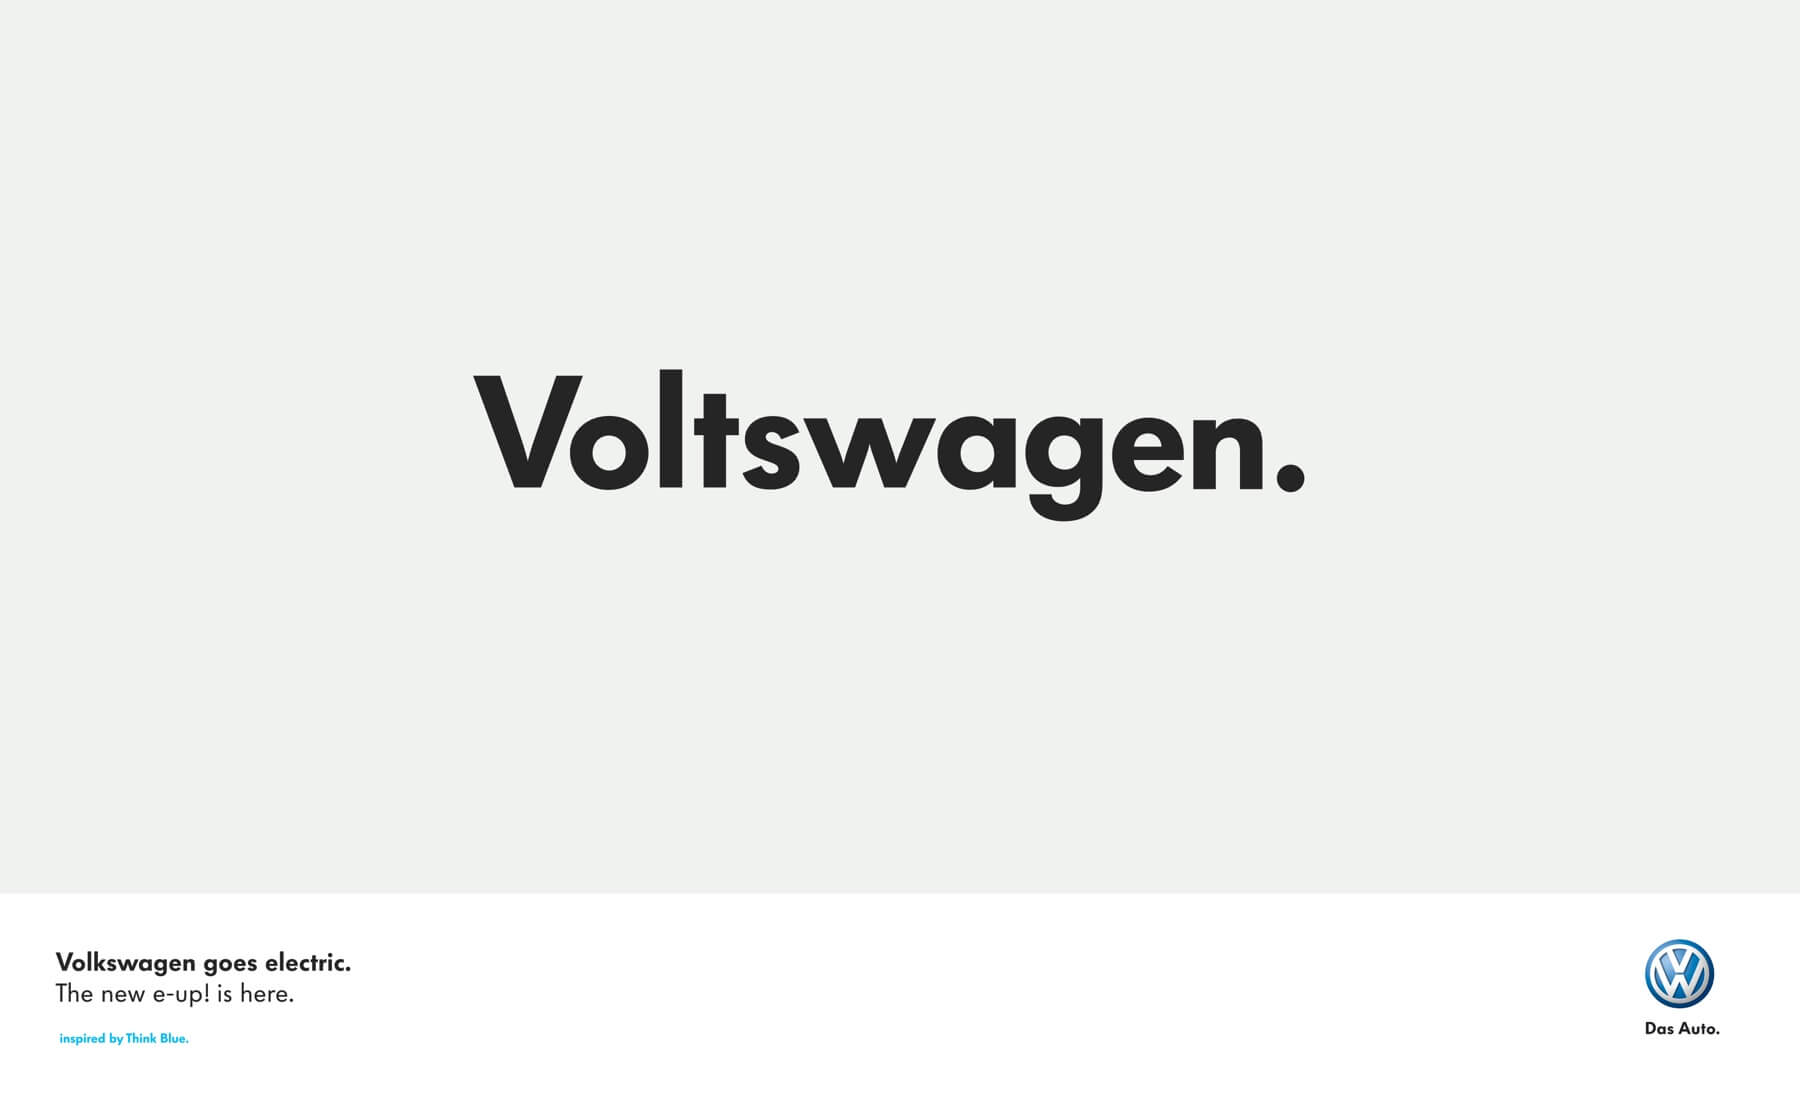 Con ustedes el nuevo: ¡Voltswagen!